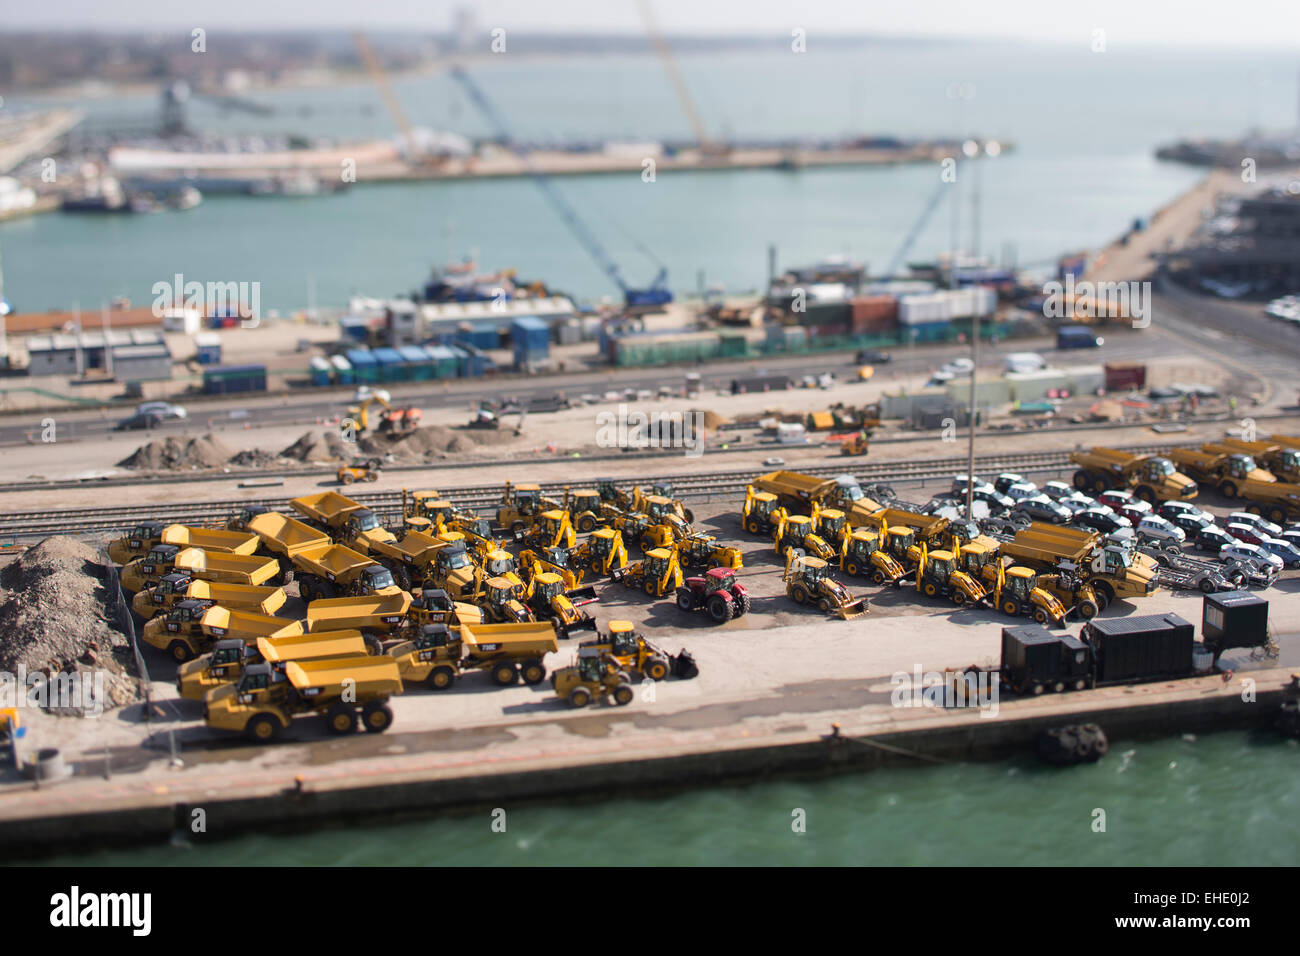 Southamptons Eastern Docks, Blick nach Süden. Bild zeigt Autos und JCB ist Export erwartet. Bild Datum: Samstag, 7. März 2015. Stockfoto